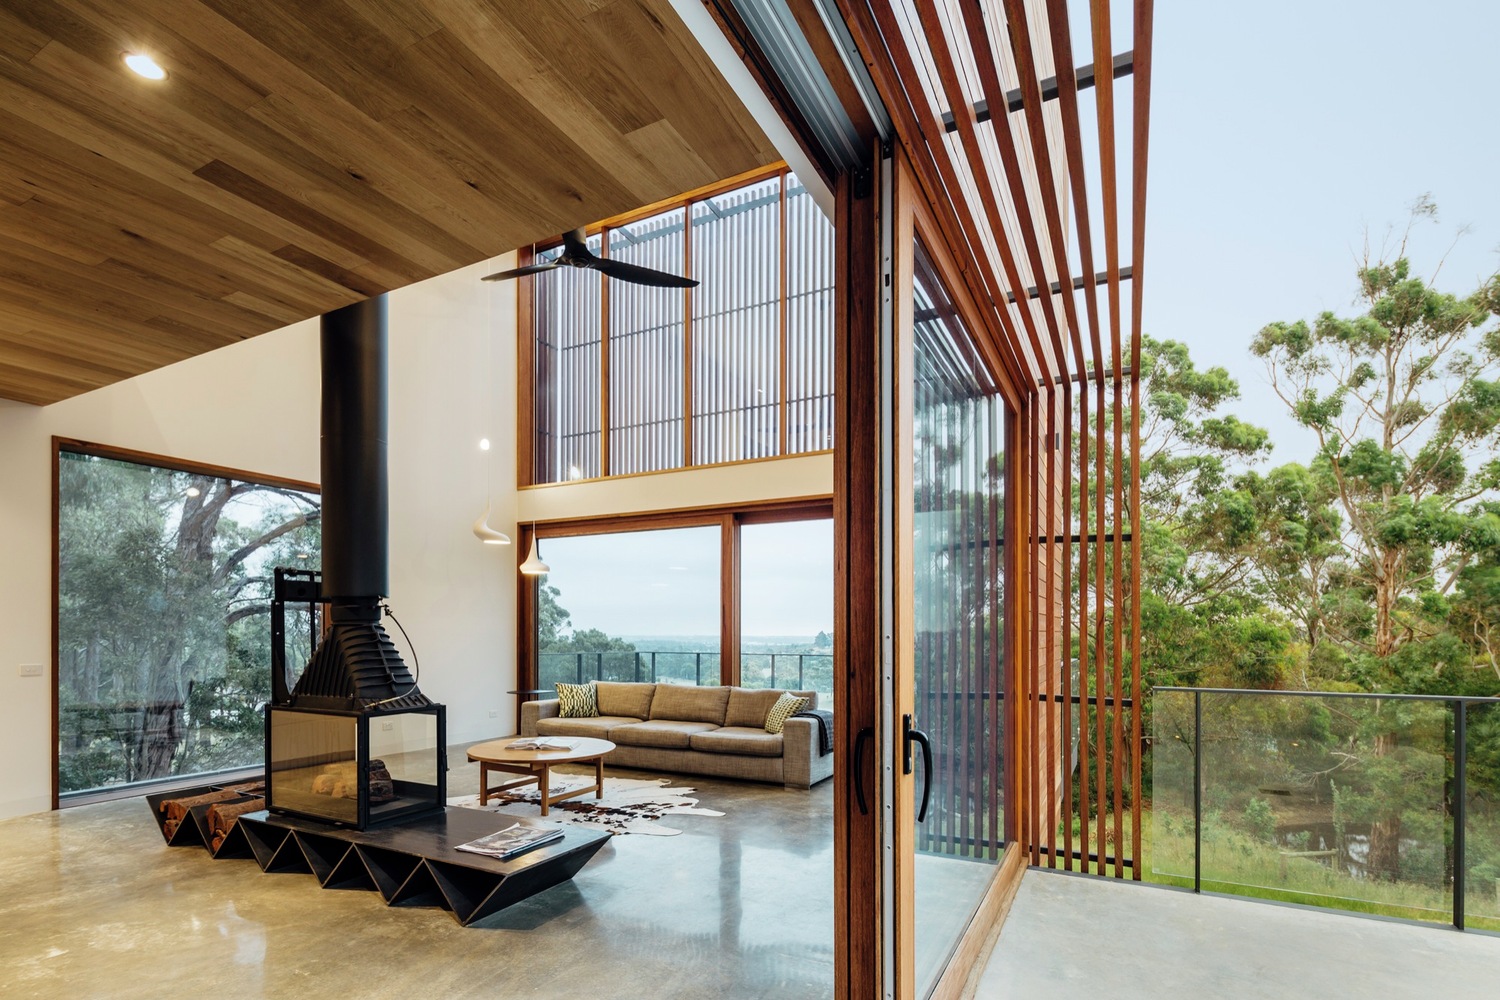 14 Impressive Dream House Designs to Inspire You - Arch2O.com